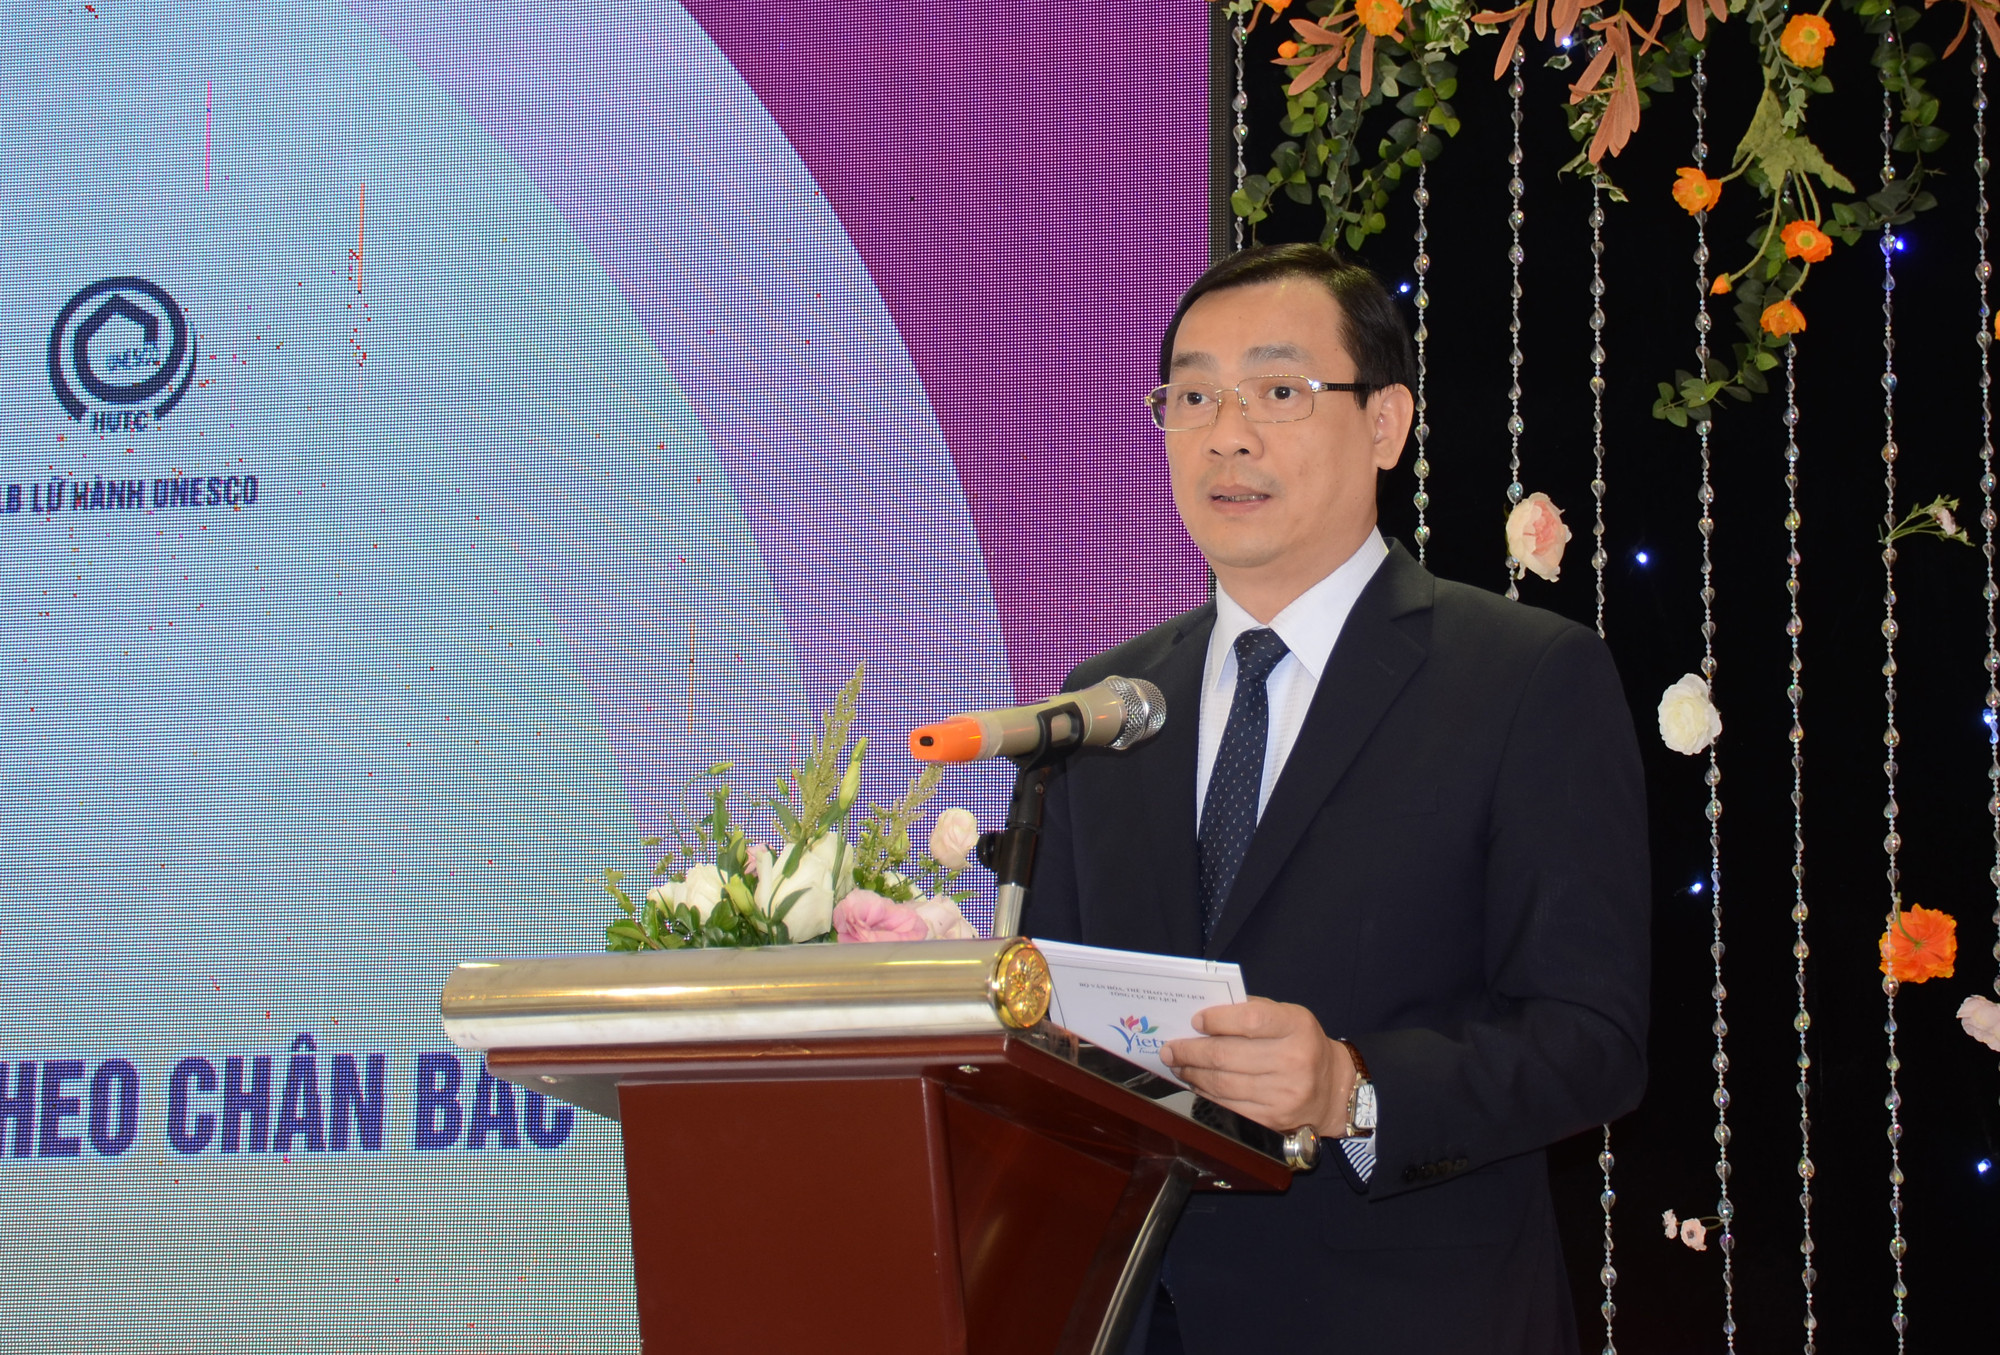 Tổng cục trưởng Tổng cục Du lịch Việt Nam đánh giá cao sáng kiến Hành trình theo chân Bác của Nghệ An. Ảnh Thành Chung